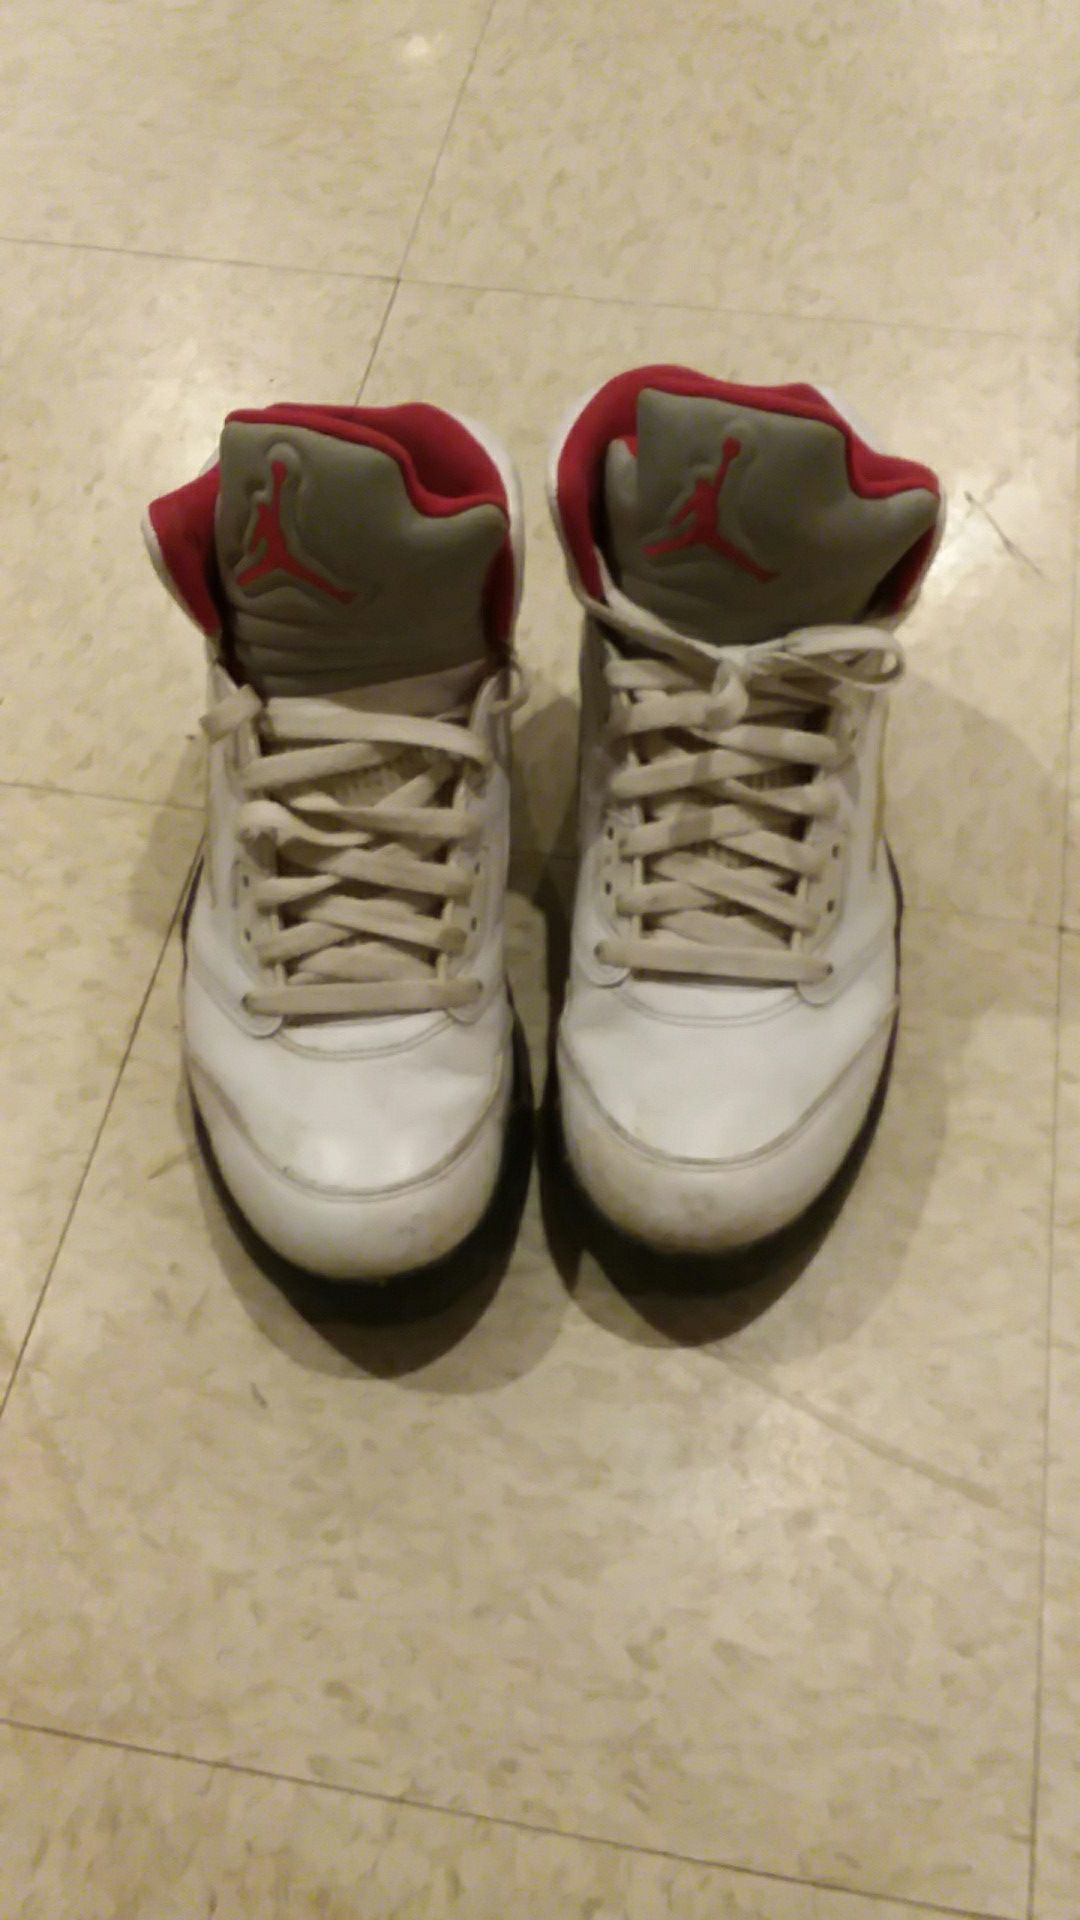 Jordan 5. Size 9 1/2